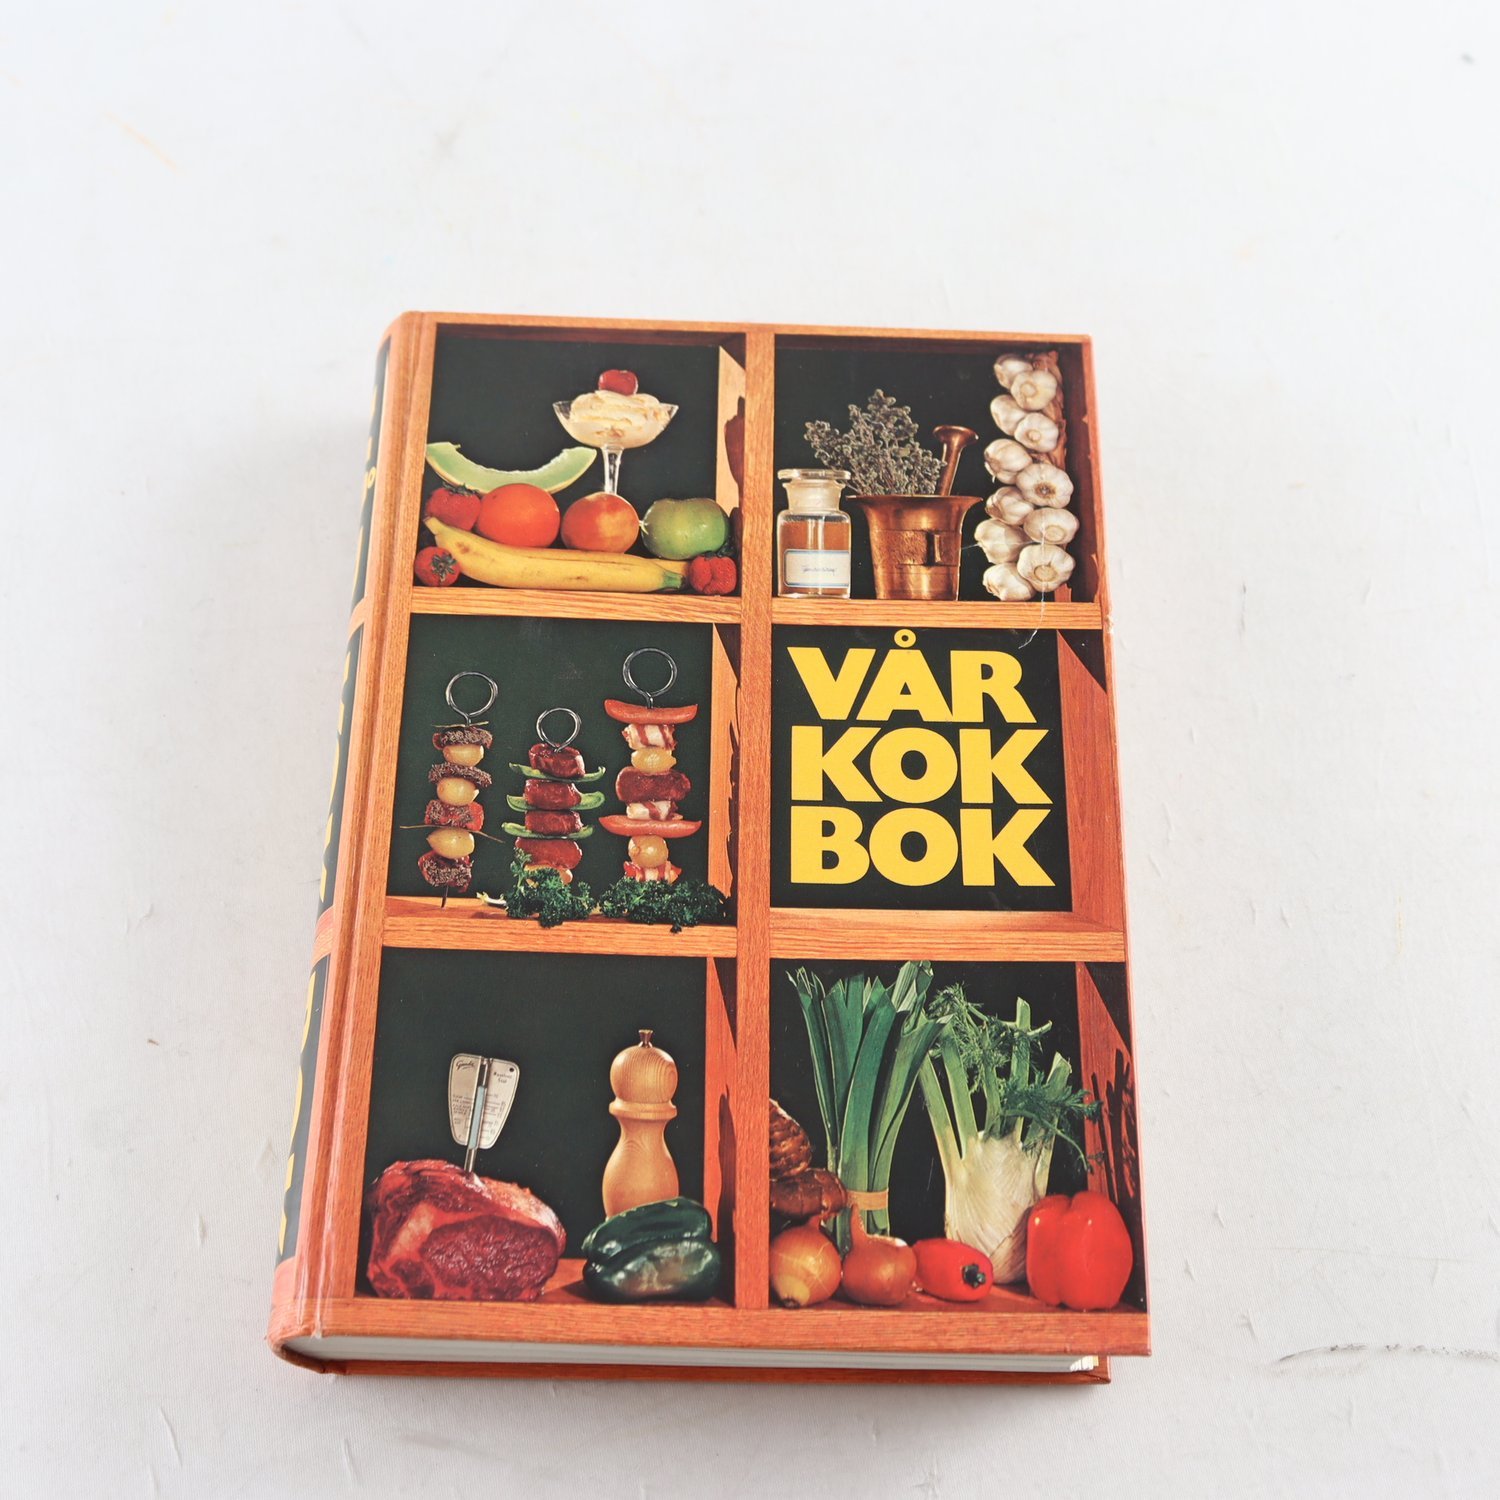 Vår kokbok (trettonde omarbetade upplagan, 1984)